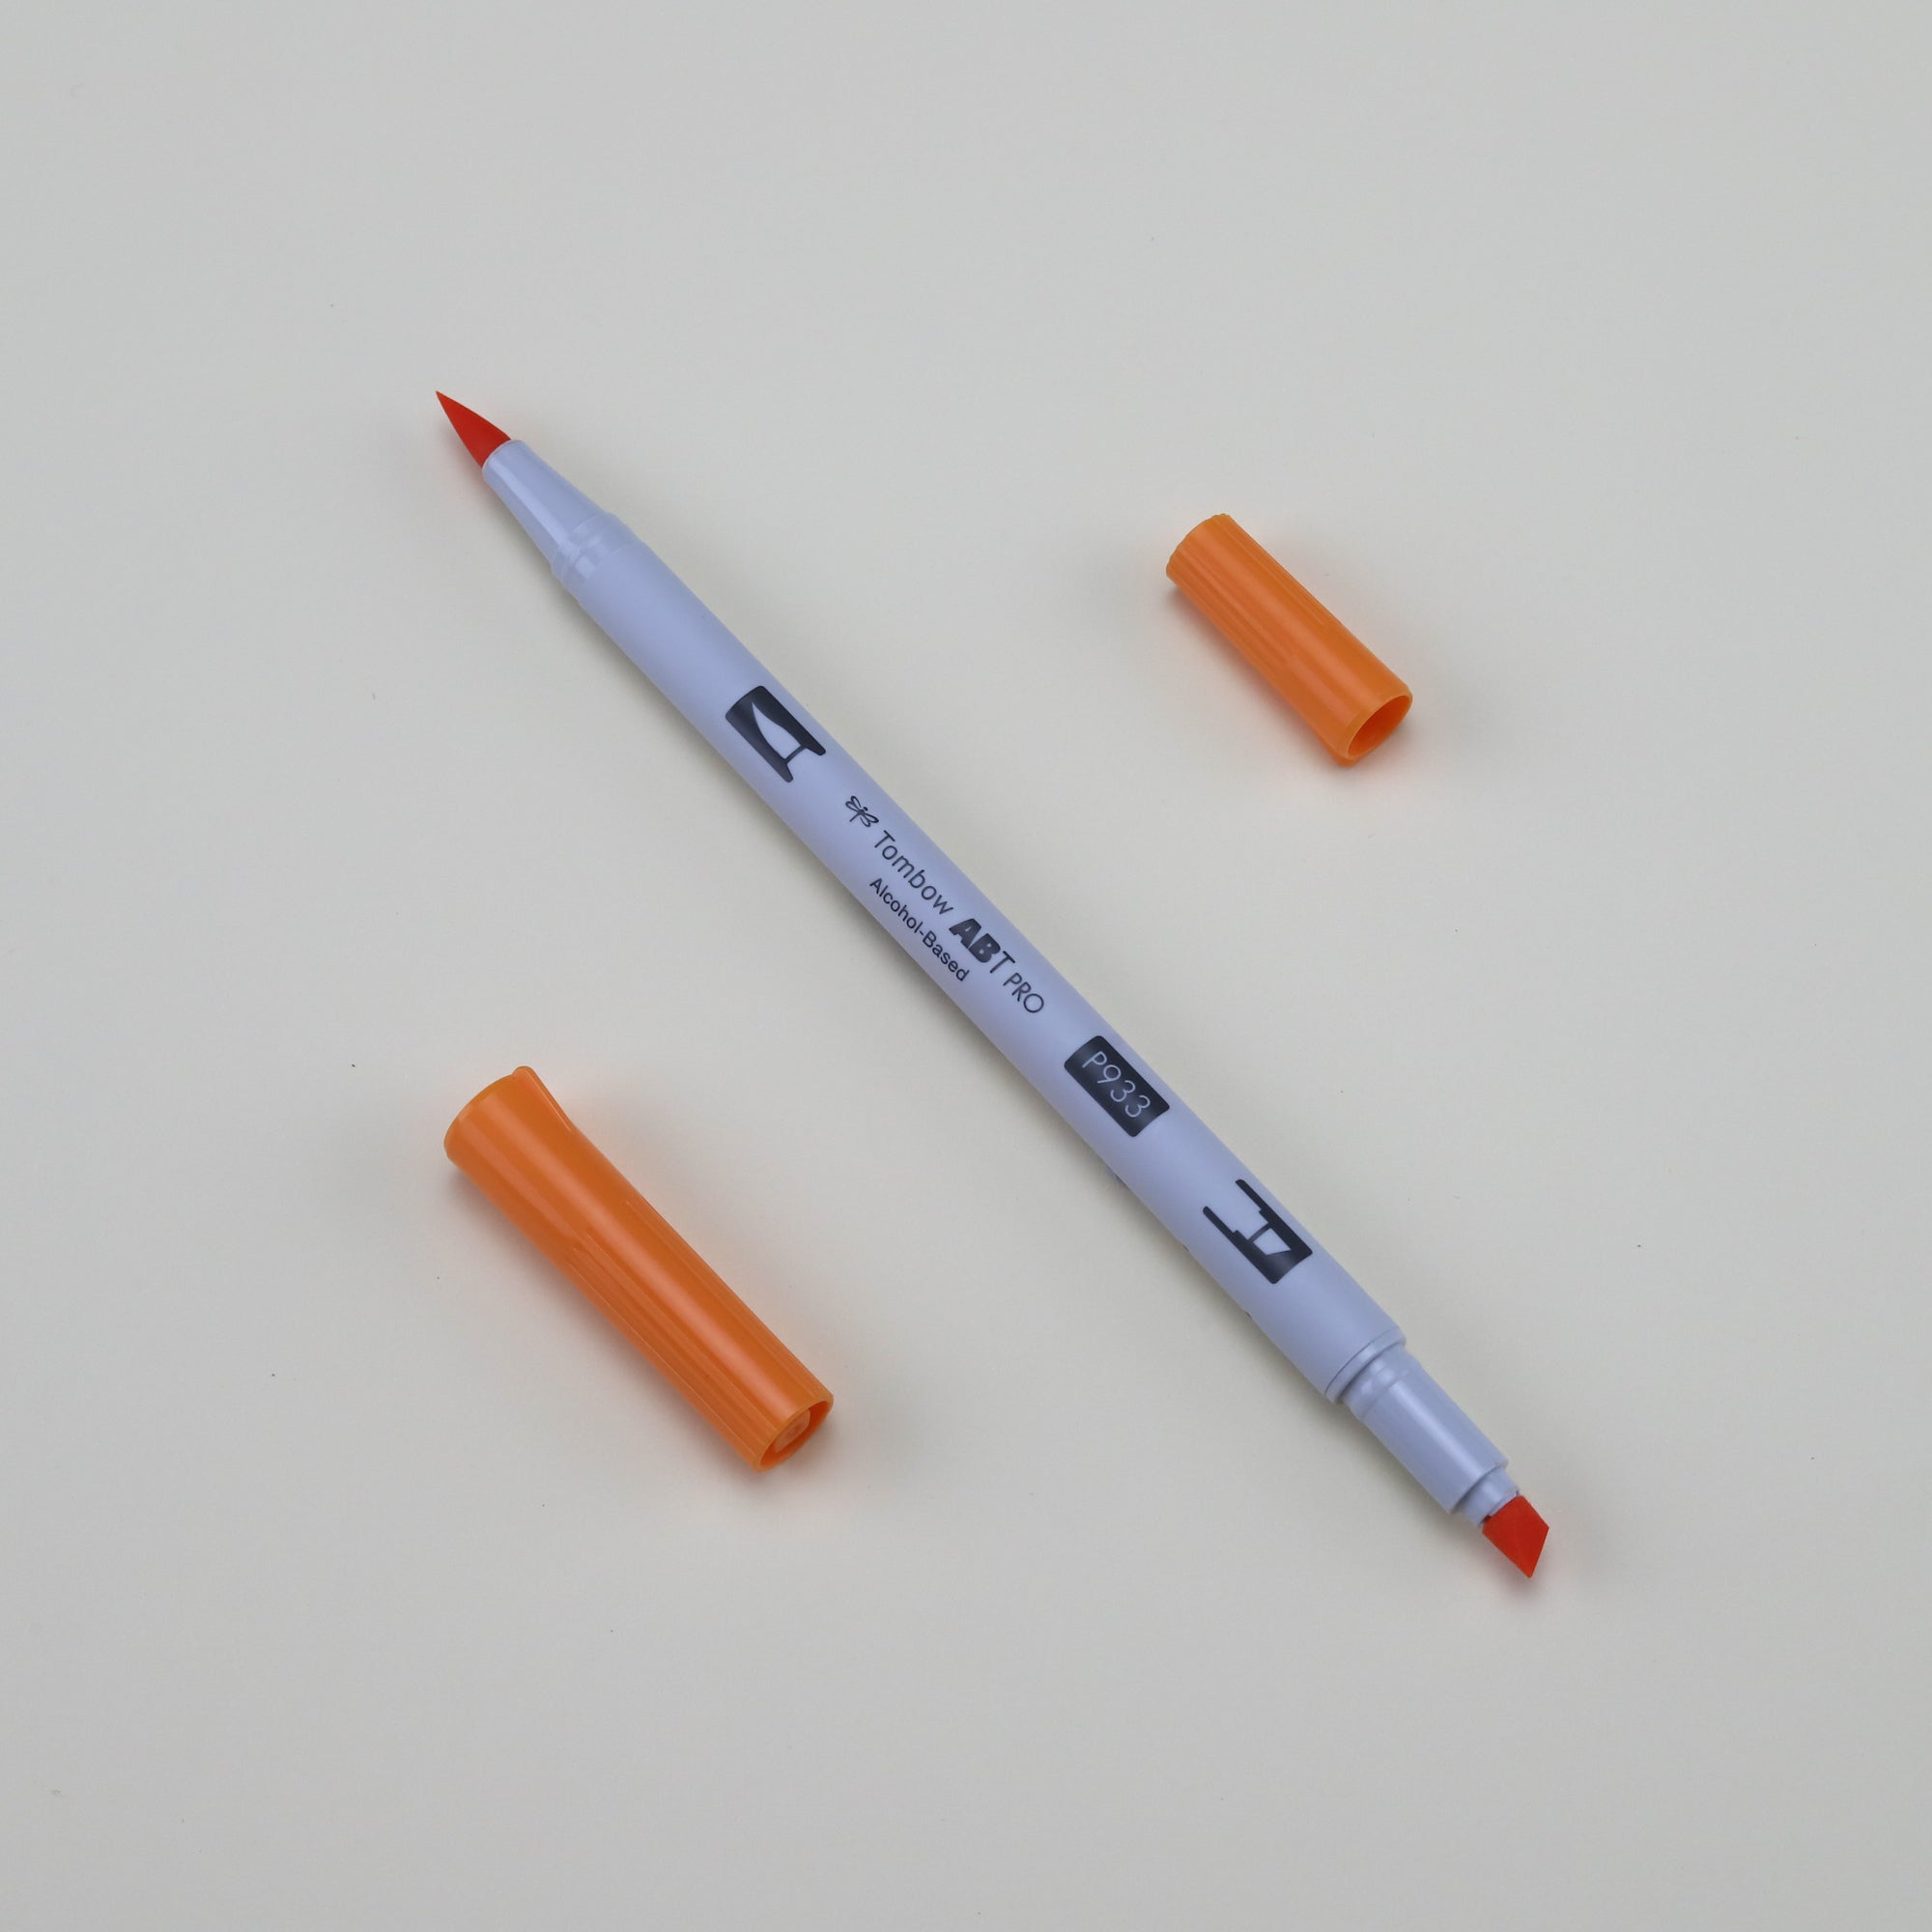 Tombow : Abt Pro : Alcohol Based Marker Pen : Orange